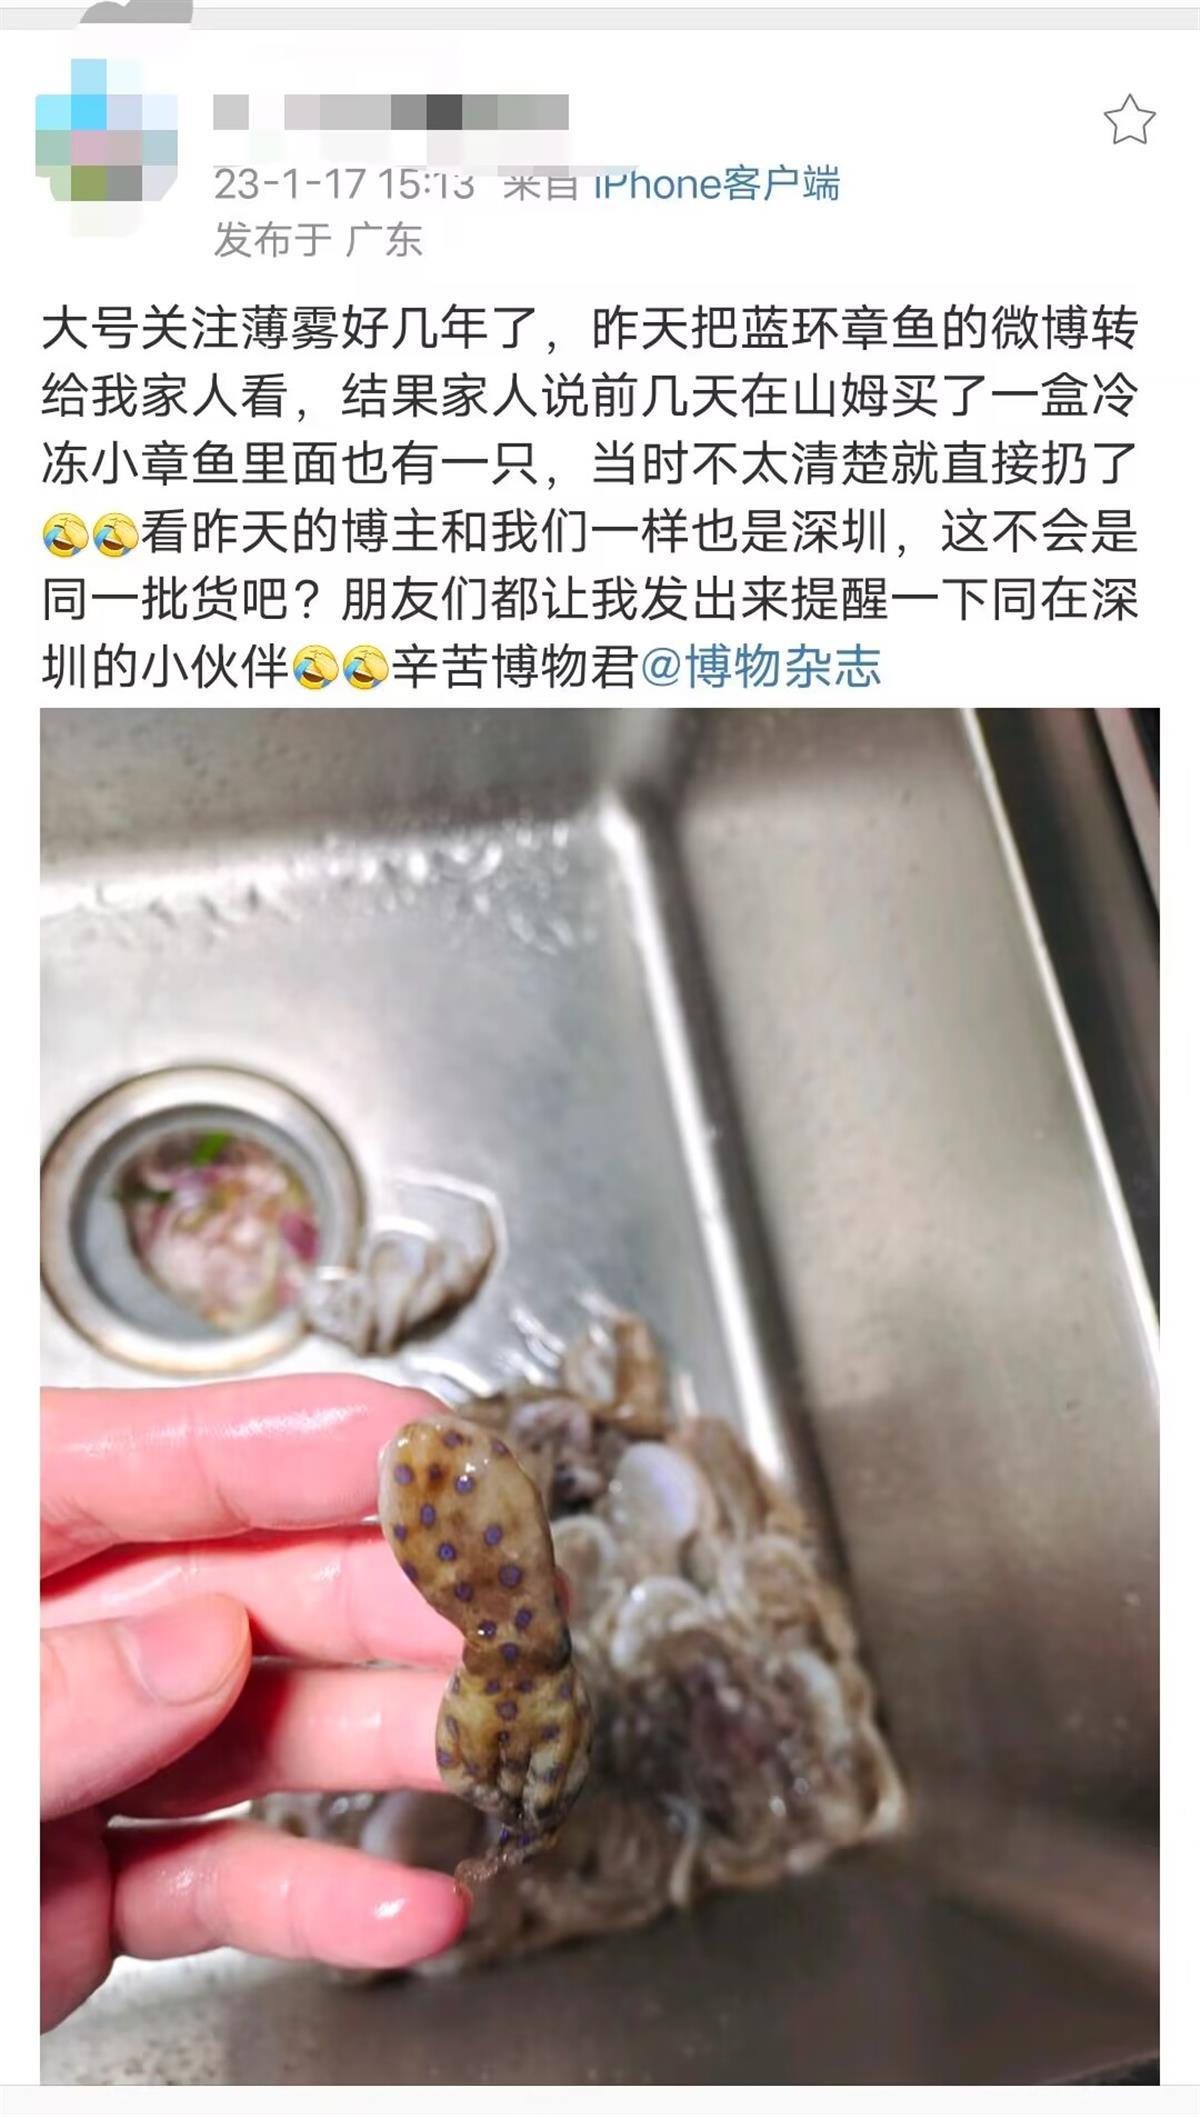 深圳市监局：对全市27家山姆和沃尔玛门店进行排查，未发现有“蓝环章鱼”